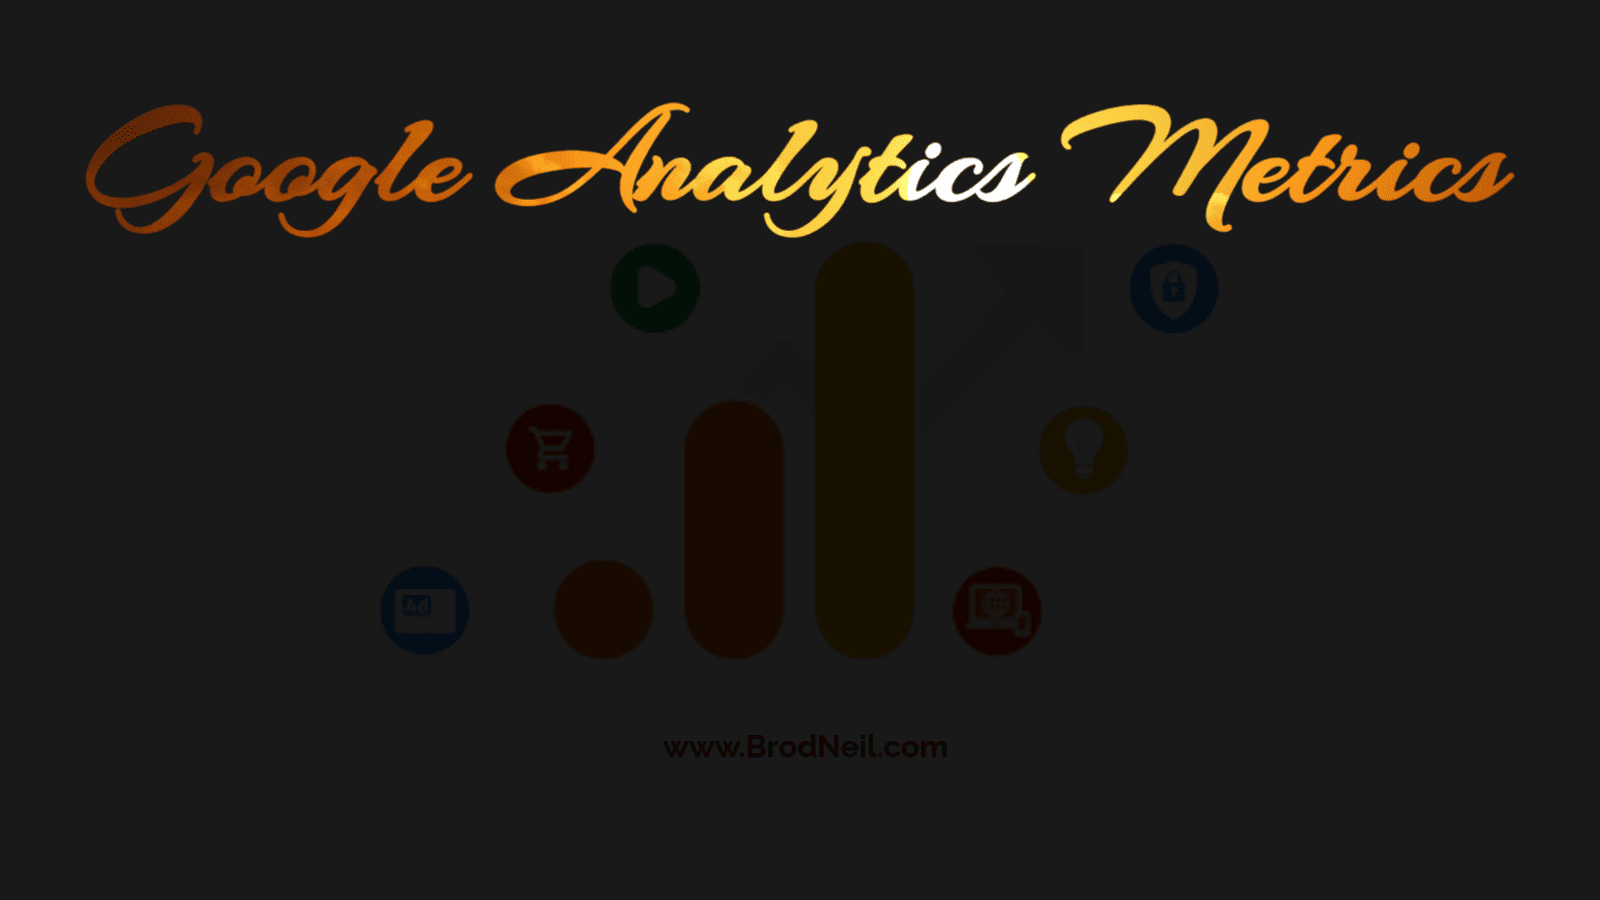 Google Analytics Metrics from Dania Errissya